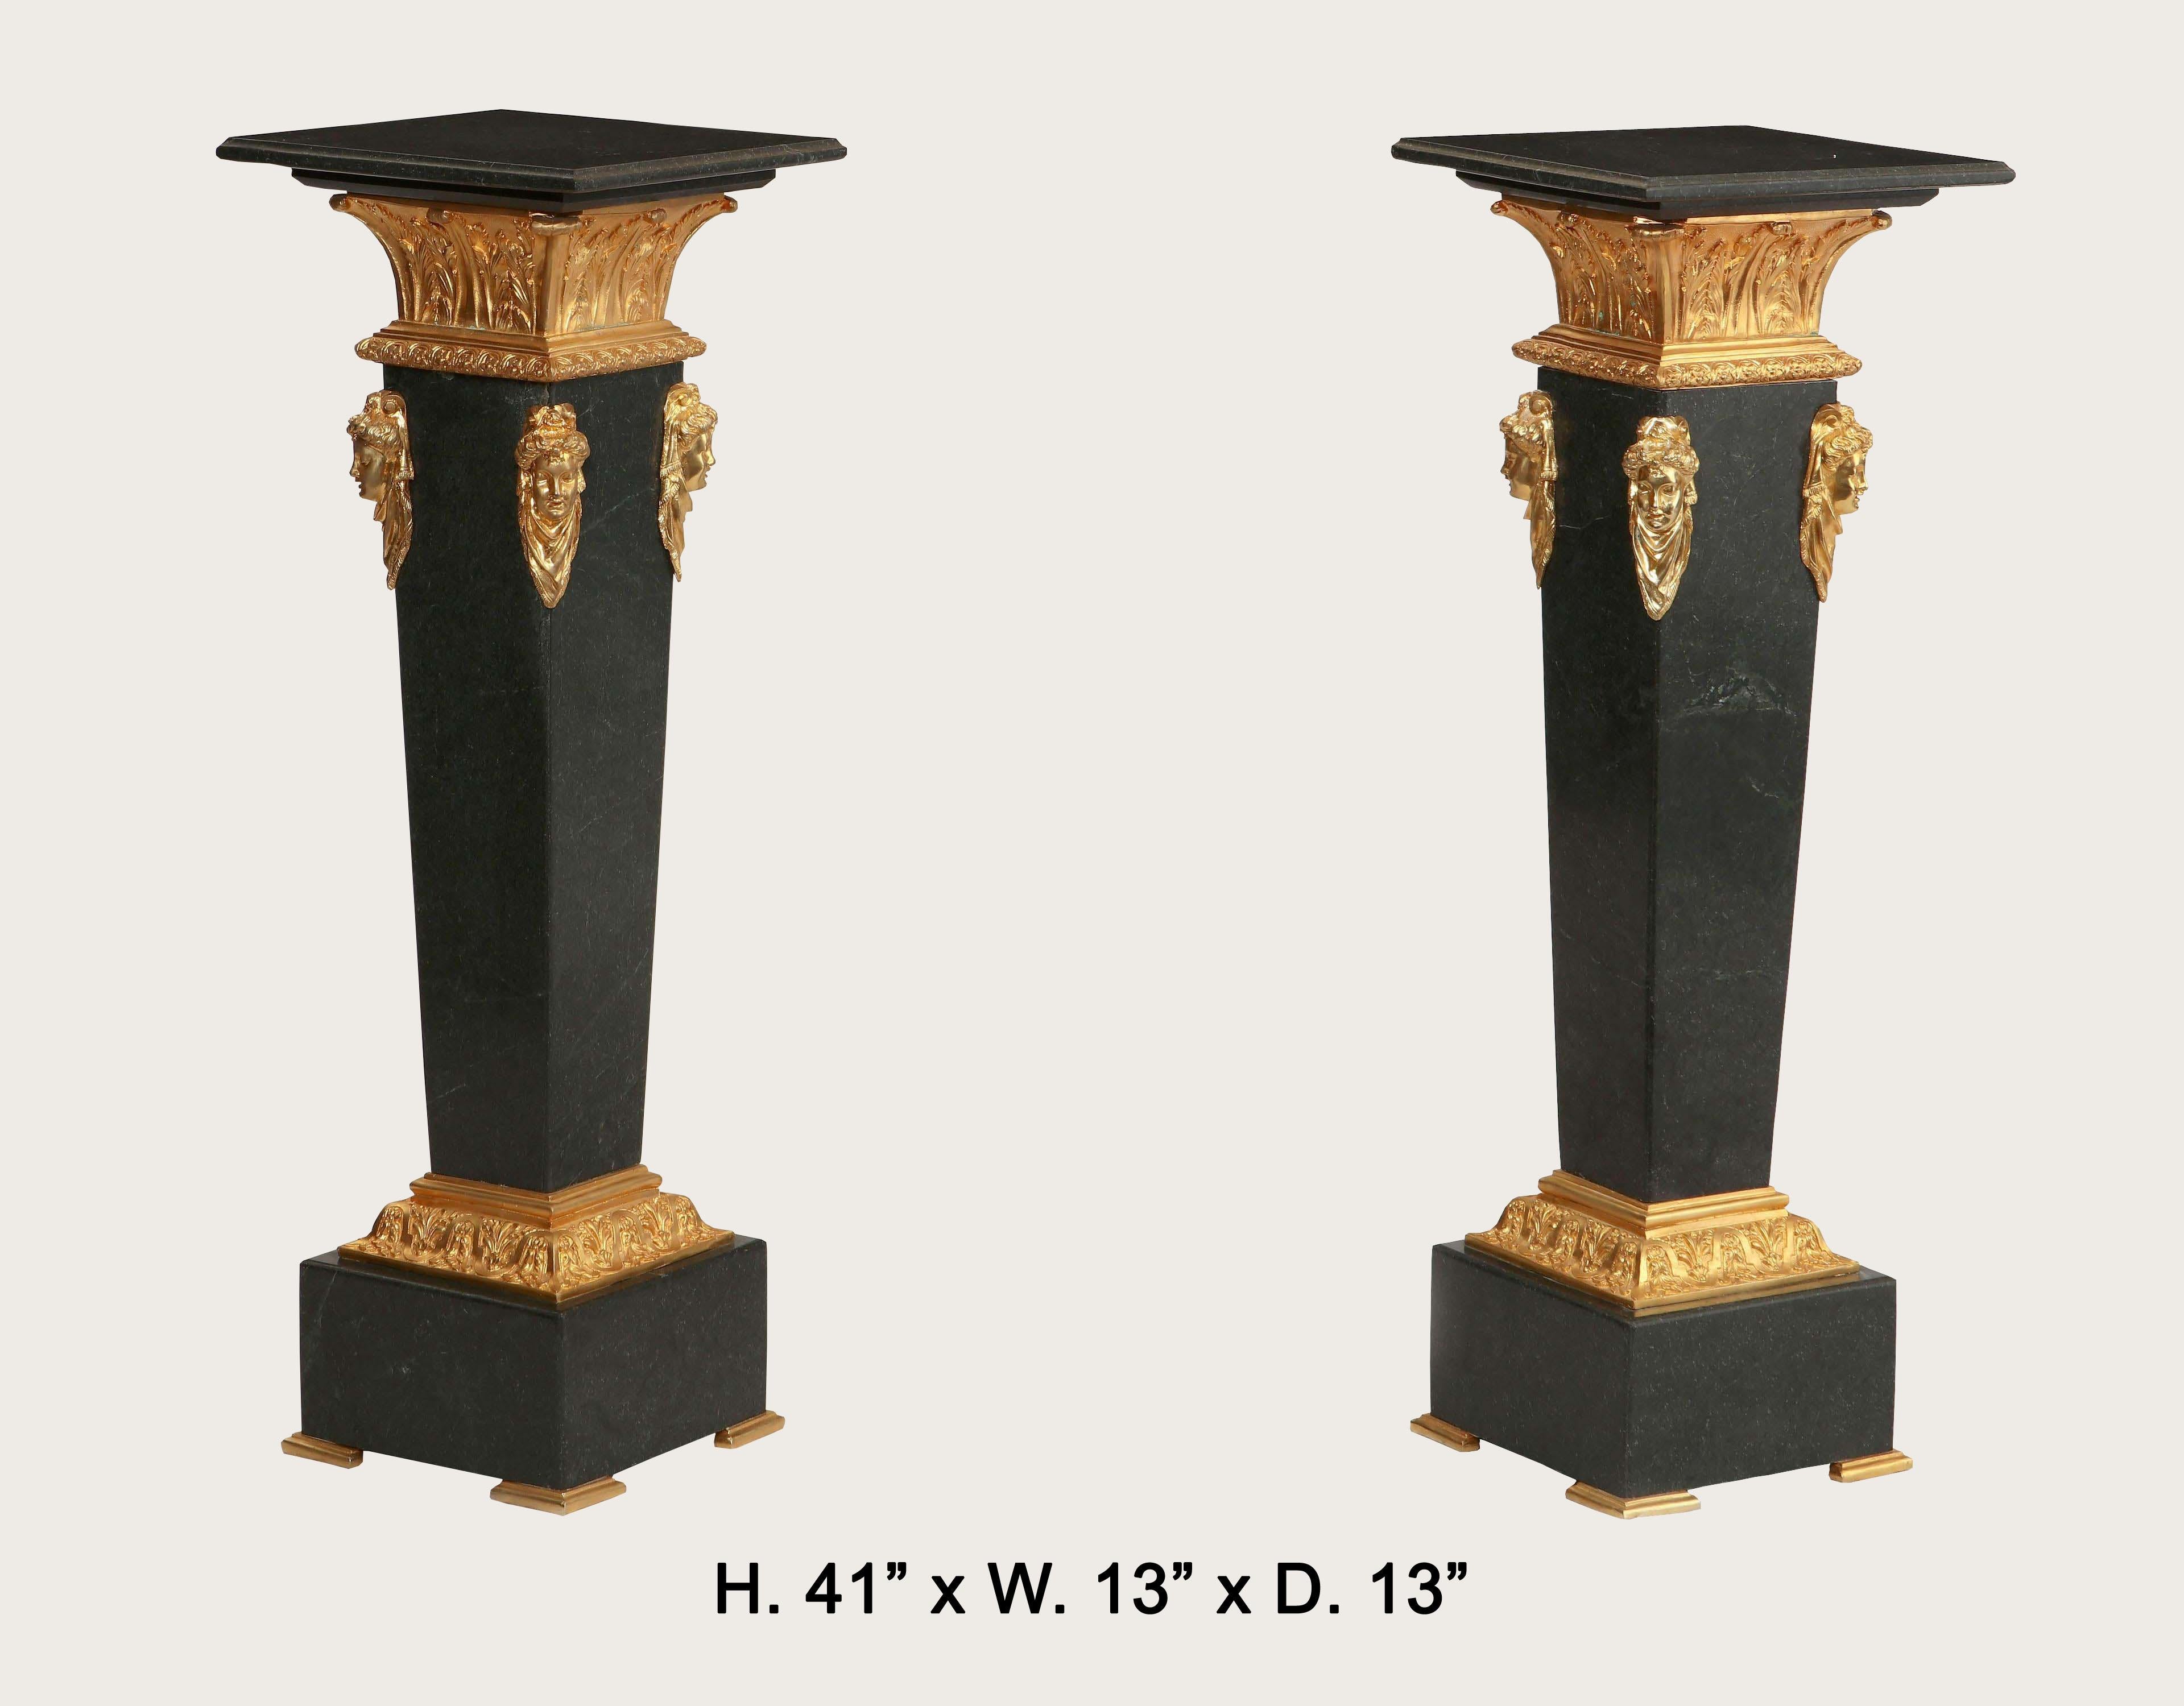 Attraktives Paar vergoldeter Bronzesockel aus schwarzem Marmor im neoklassischen Stil.
Schöne Ormolu-Beschläge mit feinen Details.
Ende des 20. Jahrhunderts.
